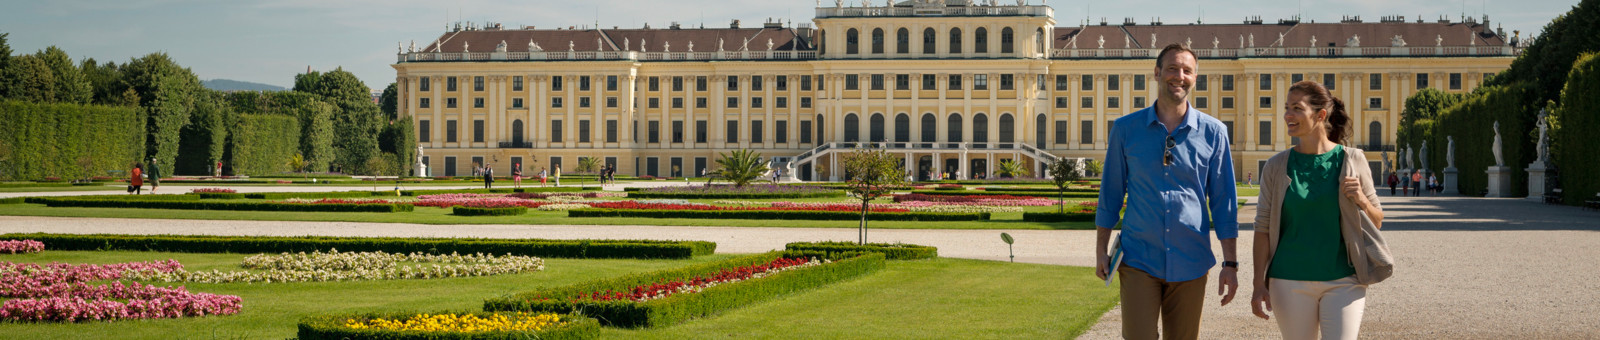     Château royal "Schönbrunn" 